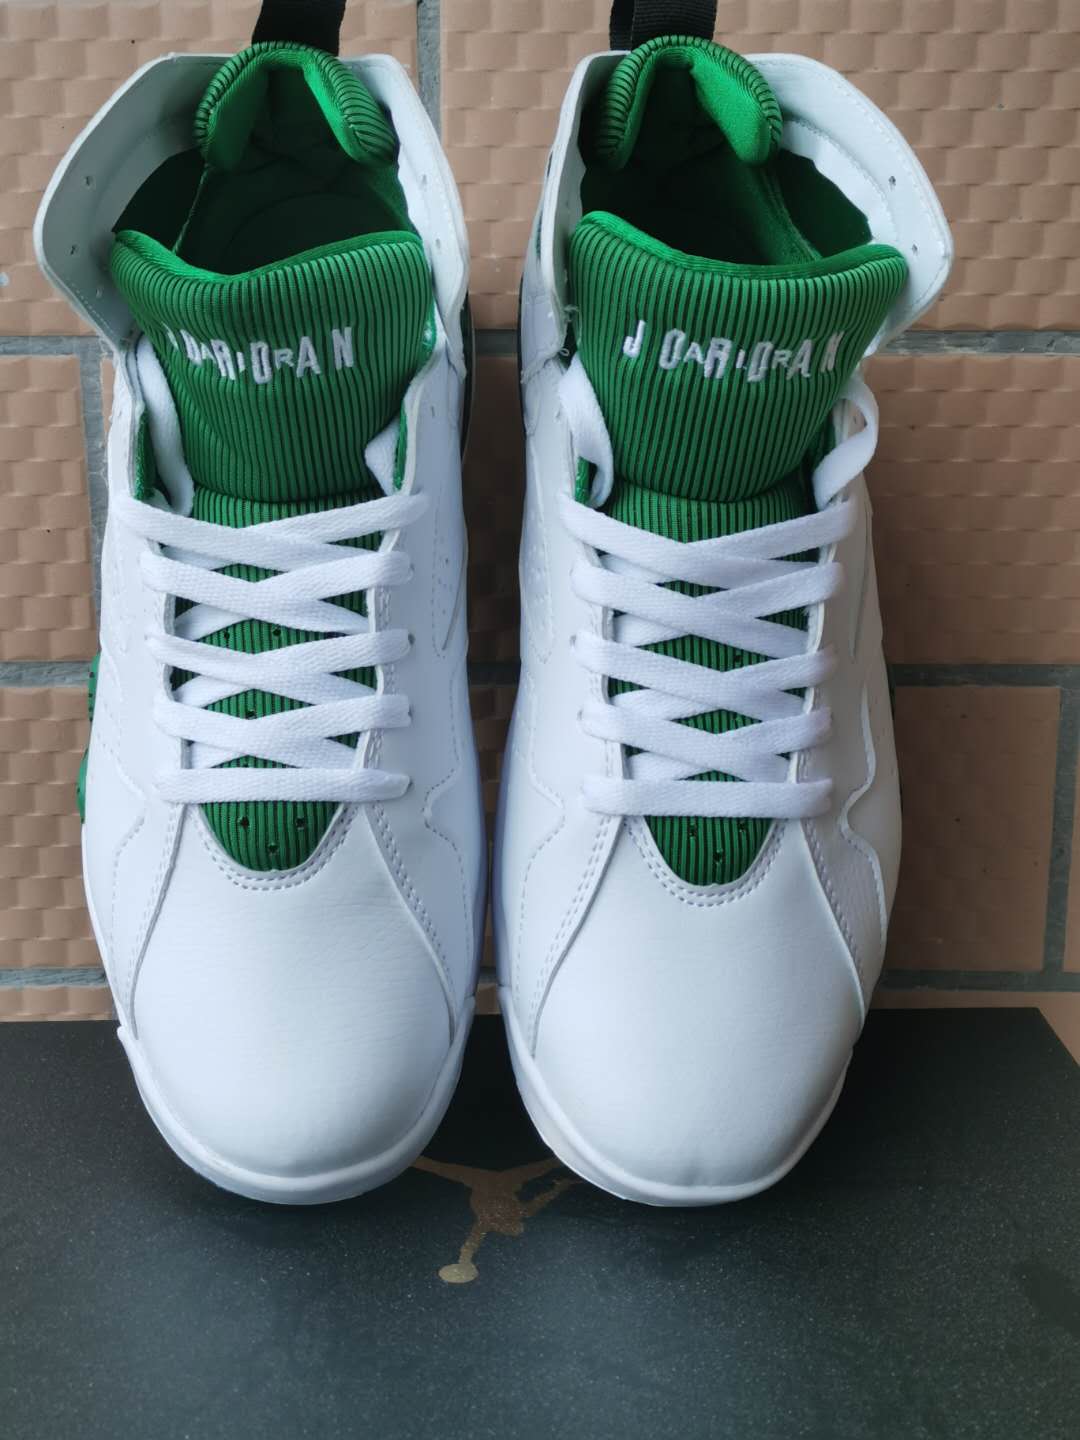 2020 Cheap Air Jordan 7 Sneakers For Men in 227642, cheap Jordan7, only $65!